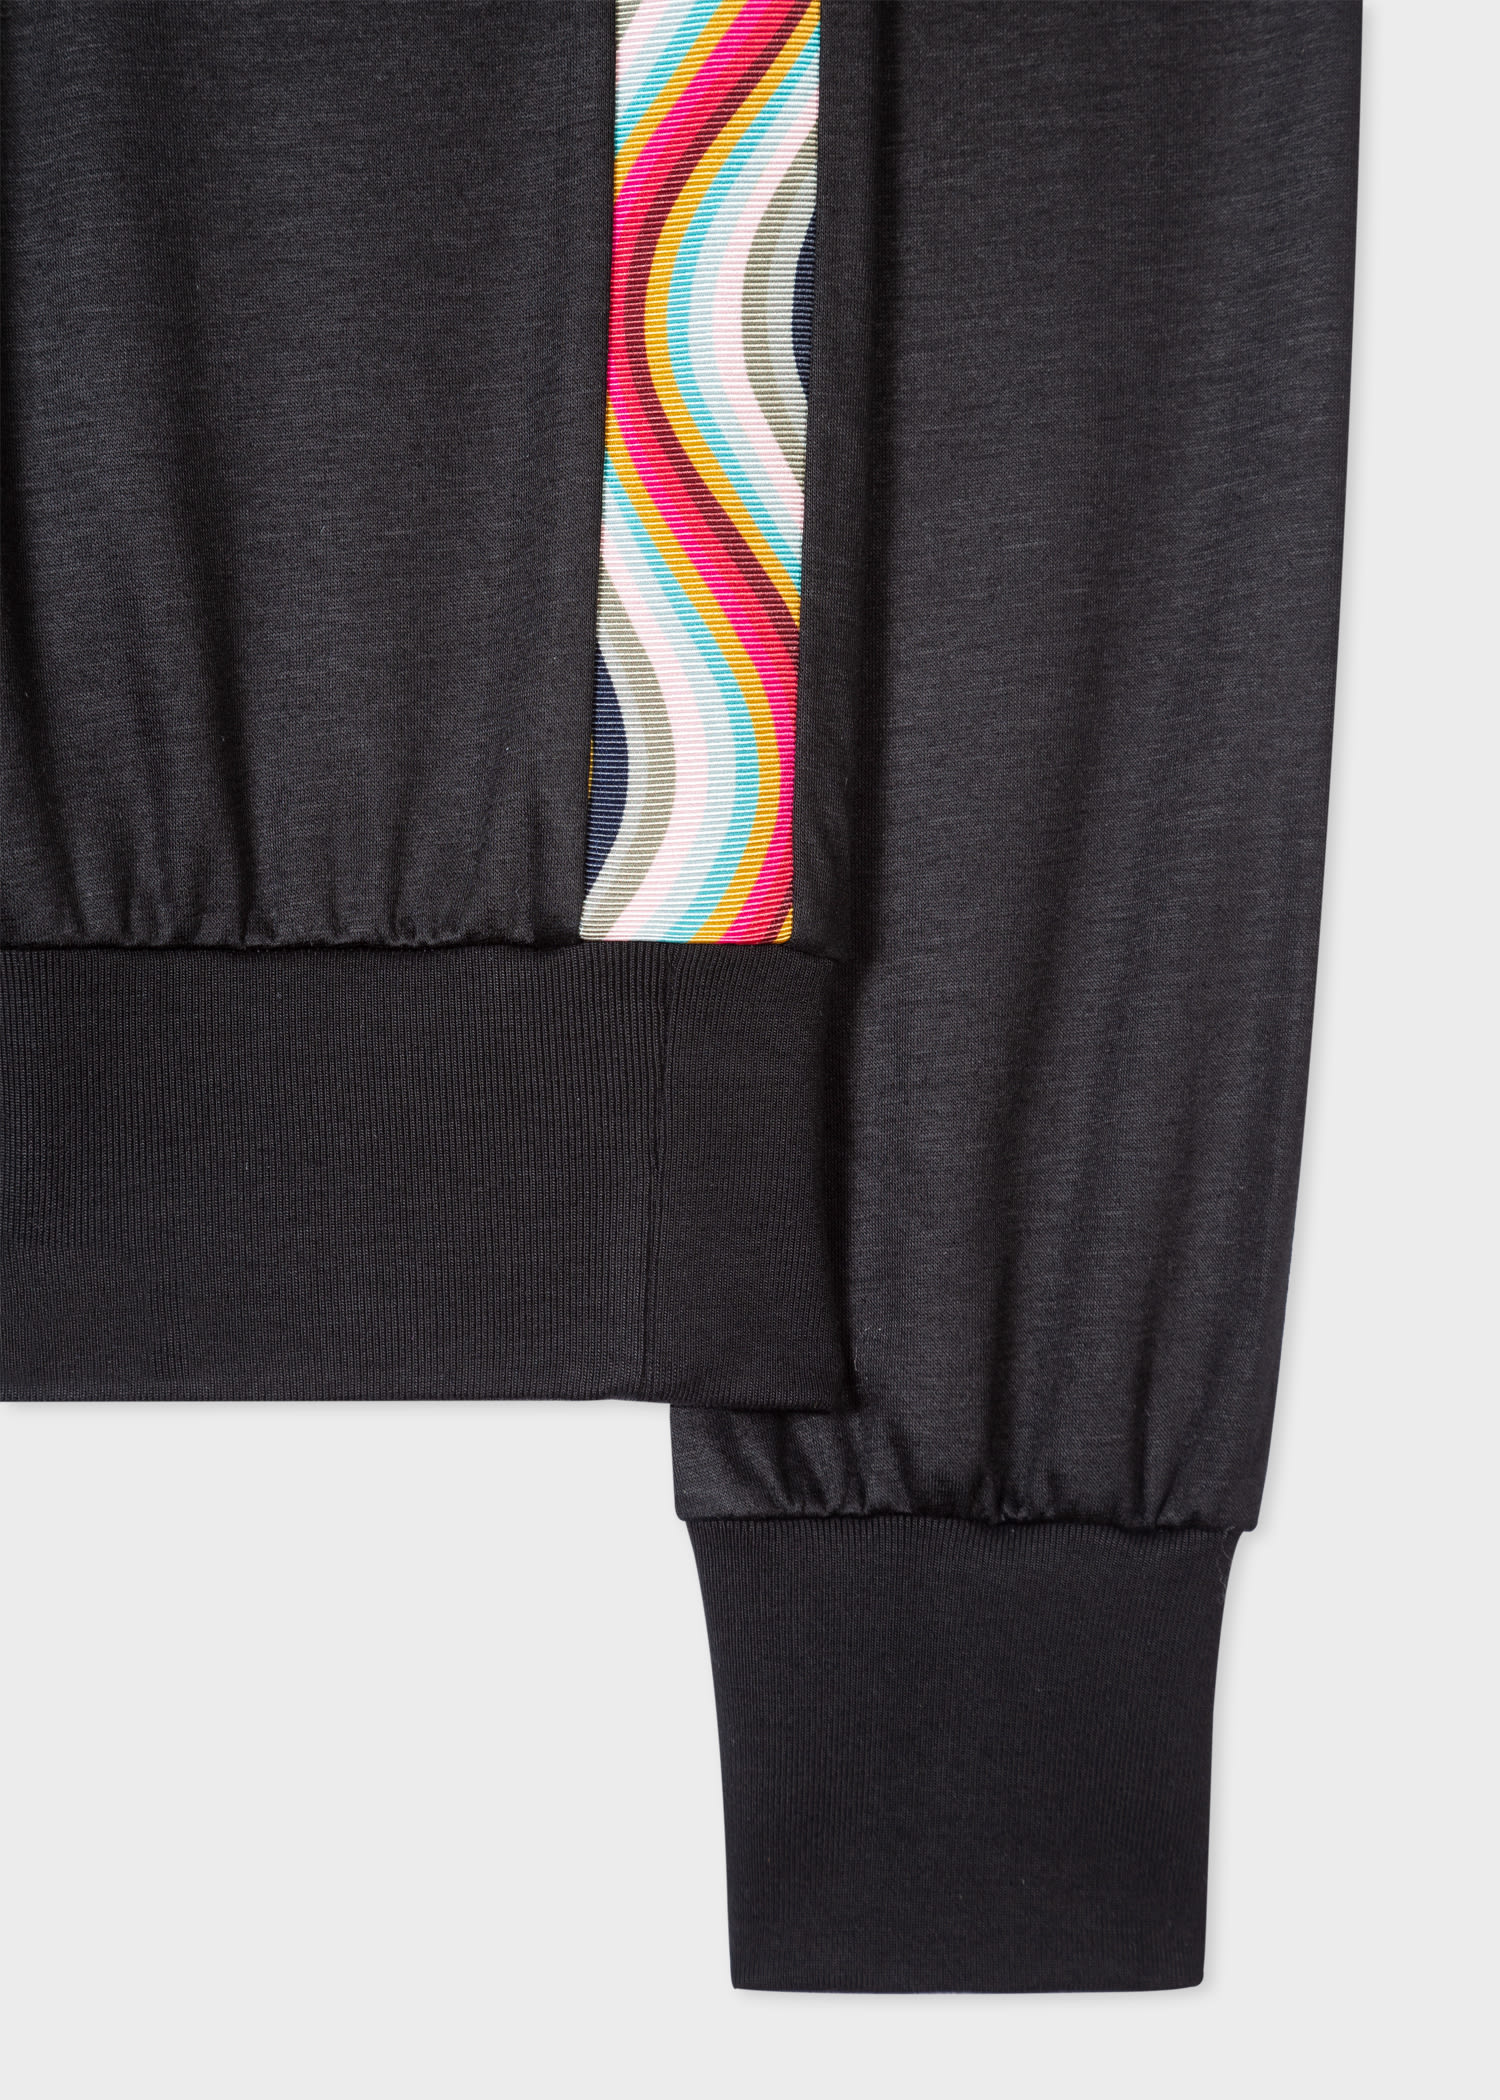 Women's Black Cotton-Blend Sweatshirt With 'Swirl' Trim